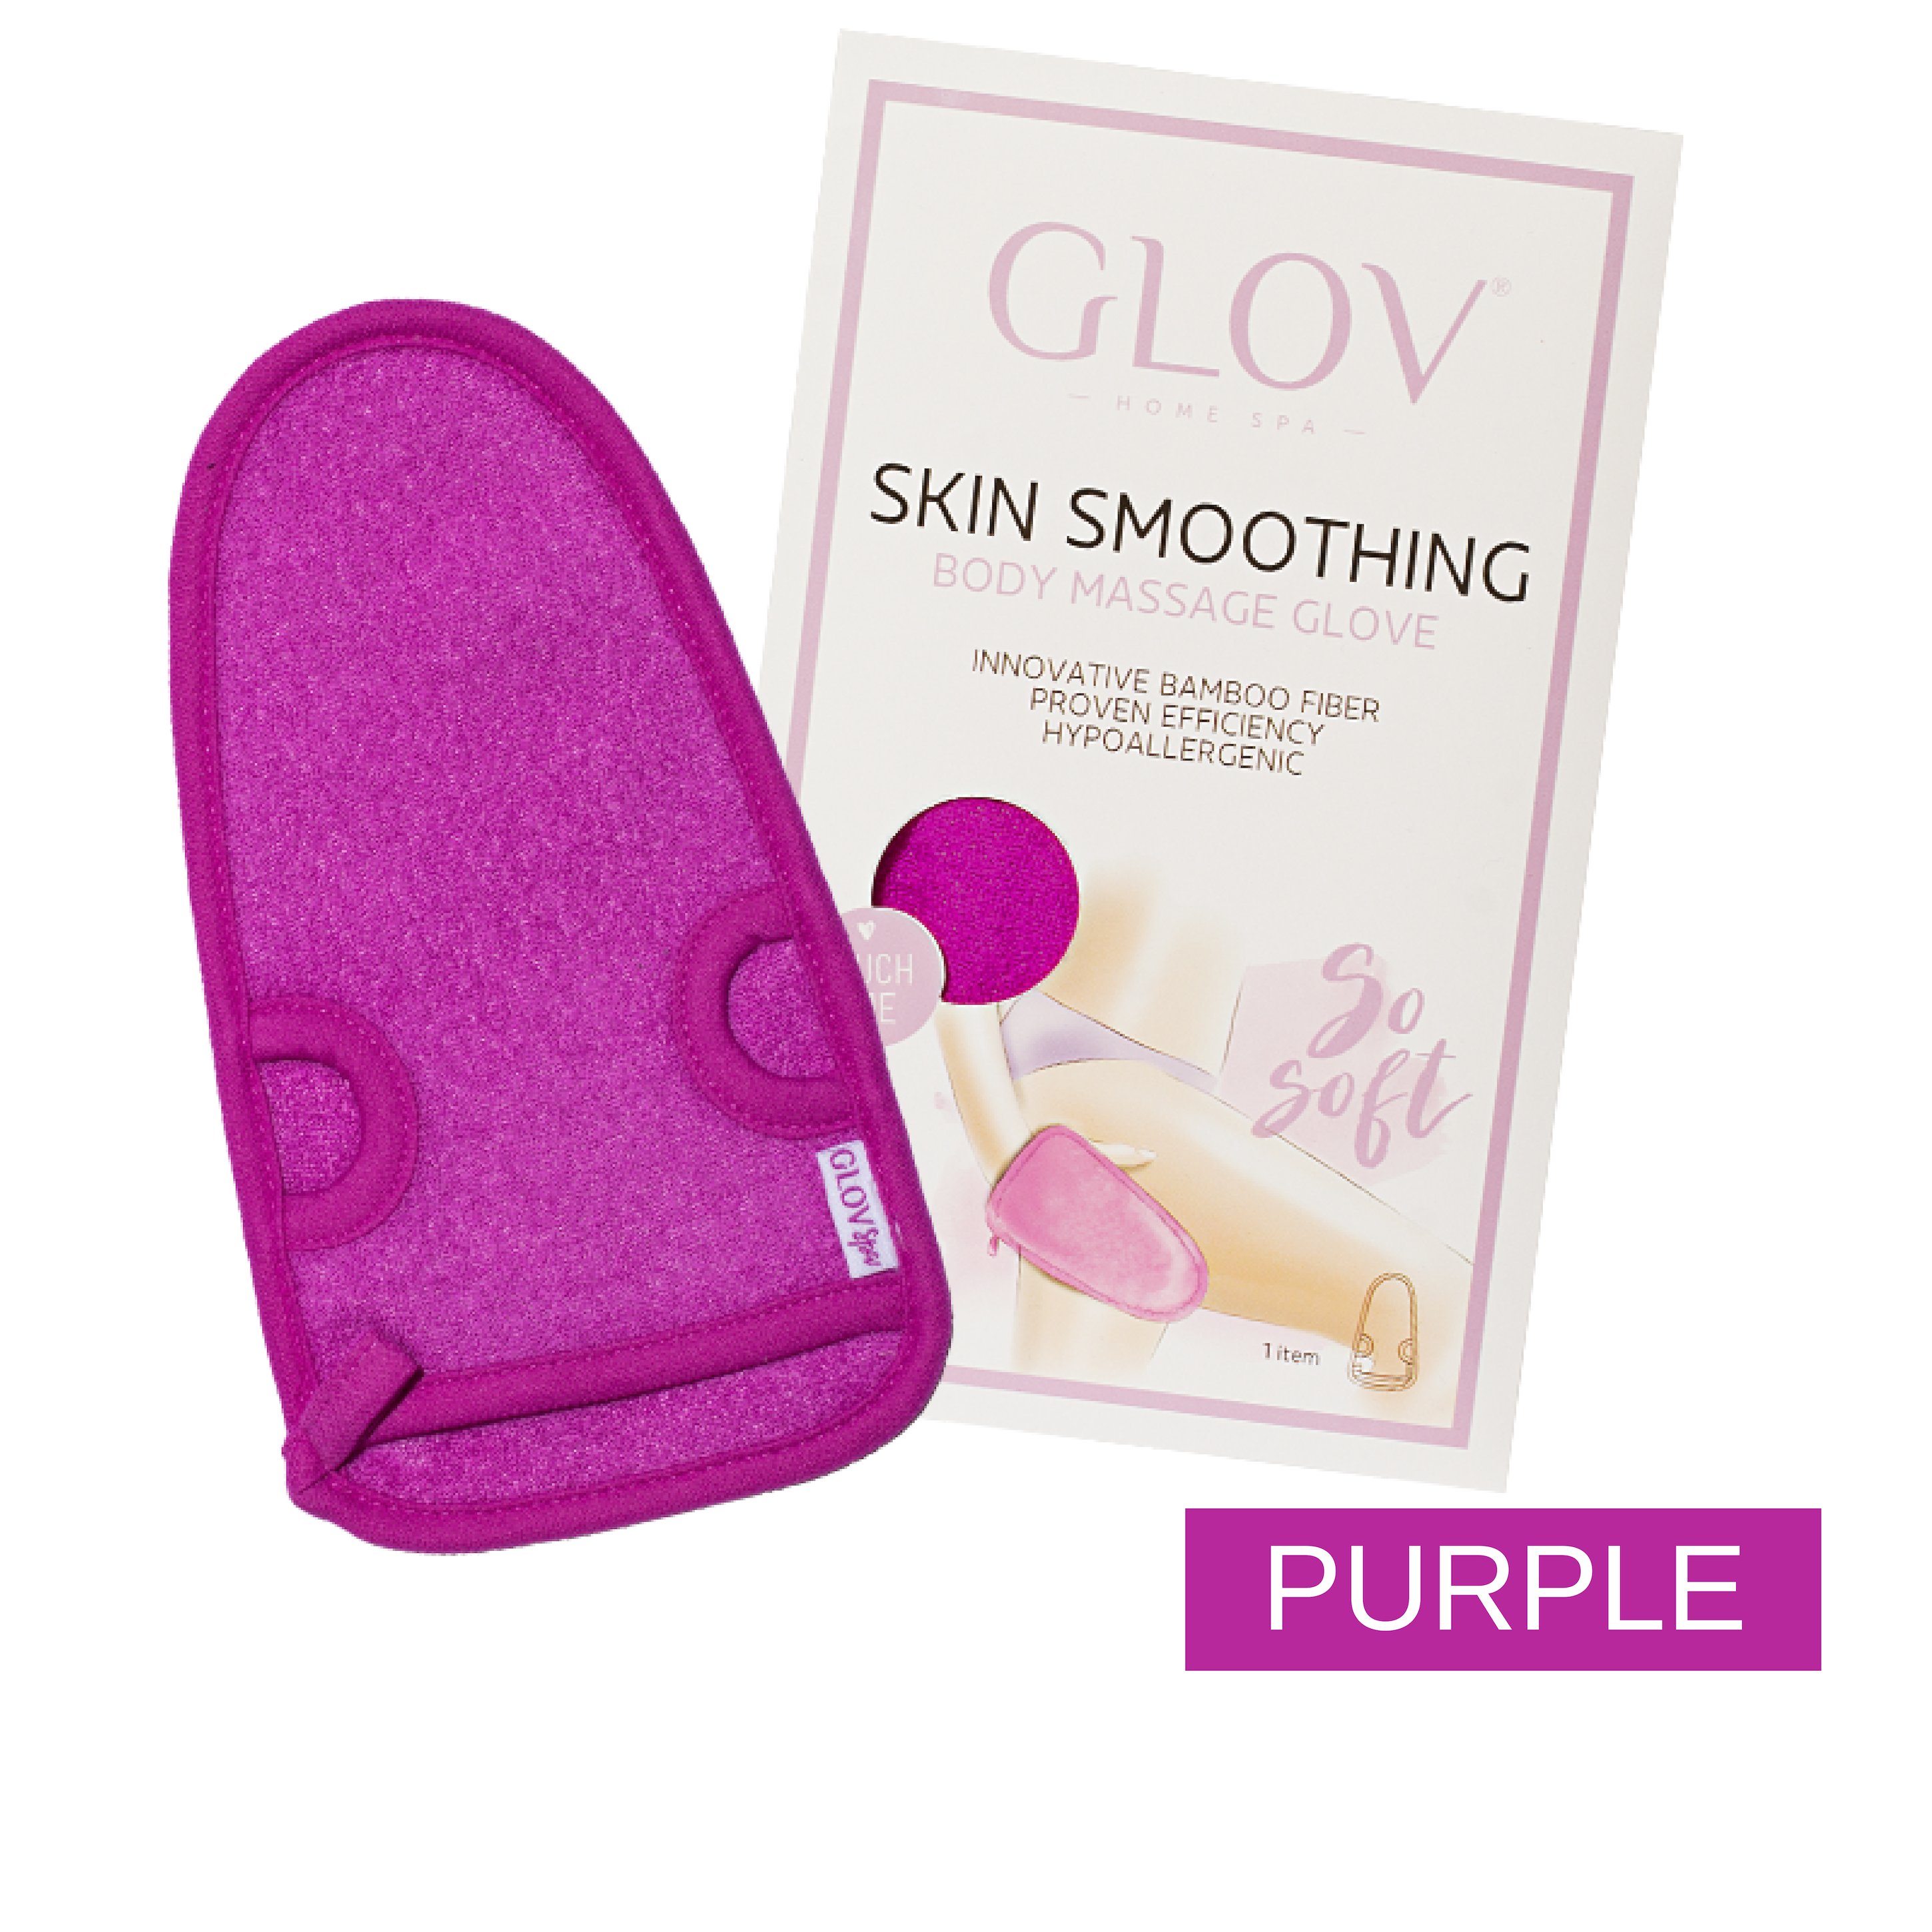 glov.gr, glov skin smoothing, body massage glove, purple 